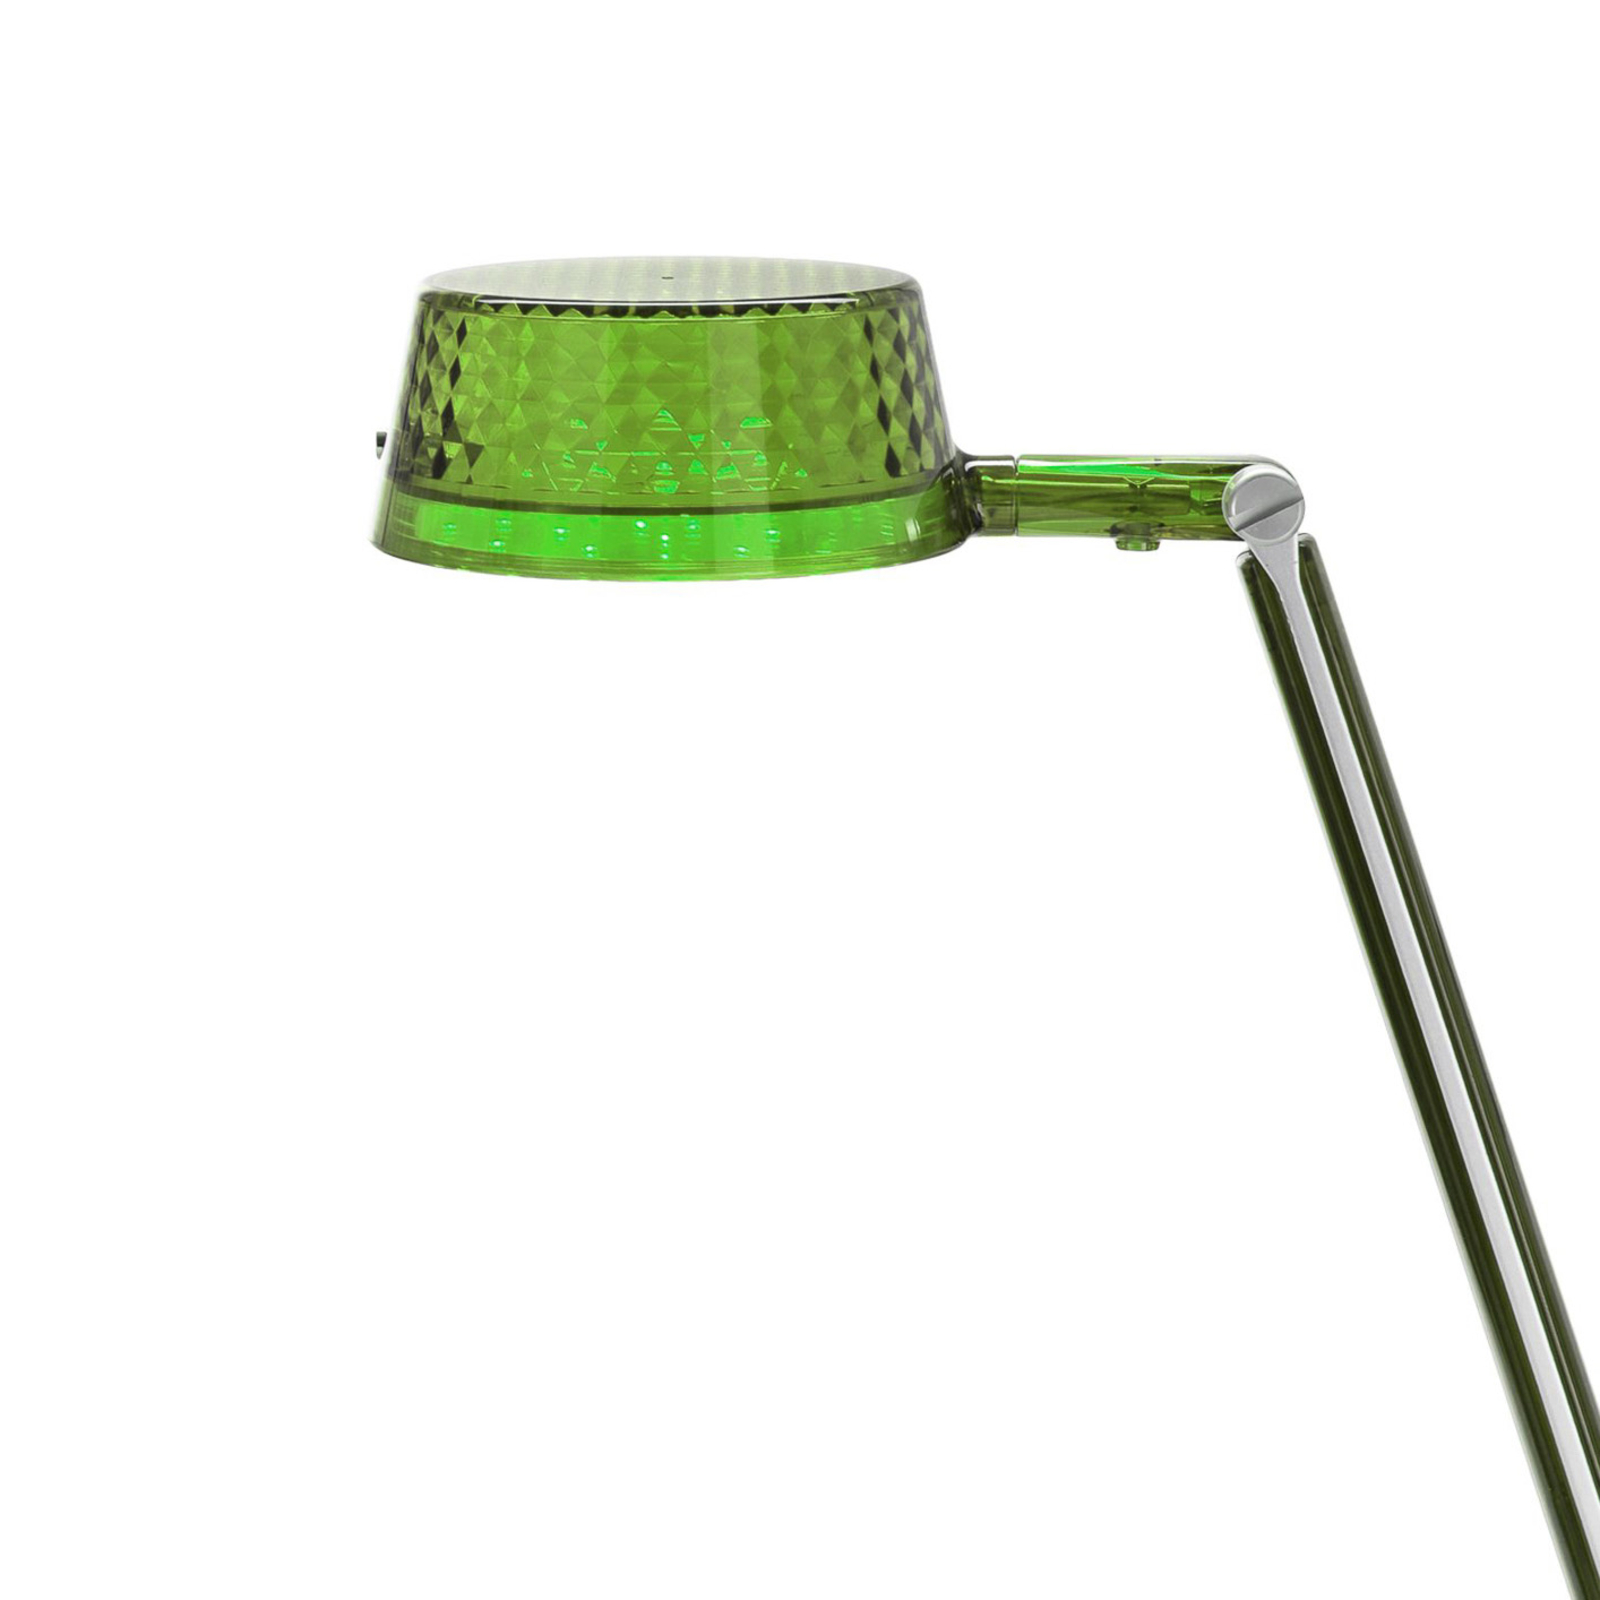 Kartell Aledin Dec - Επιτραπέζιο φωτιστικό LED, πράσινο